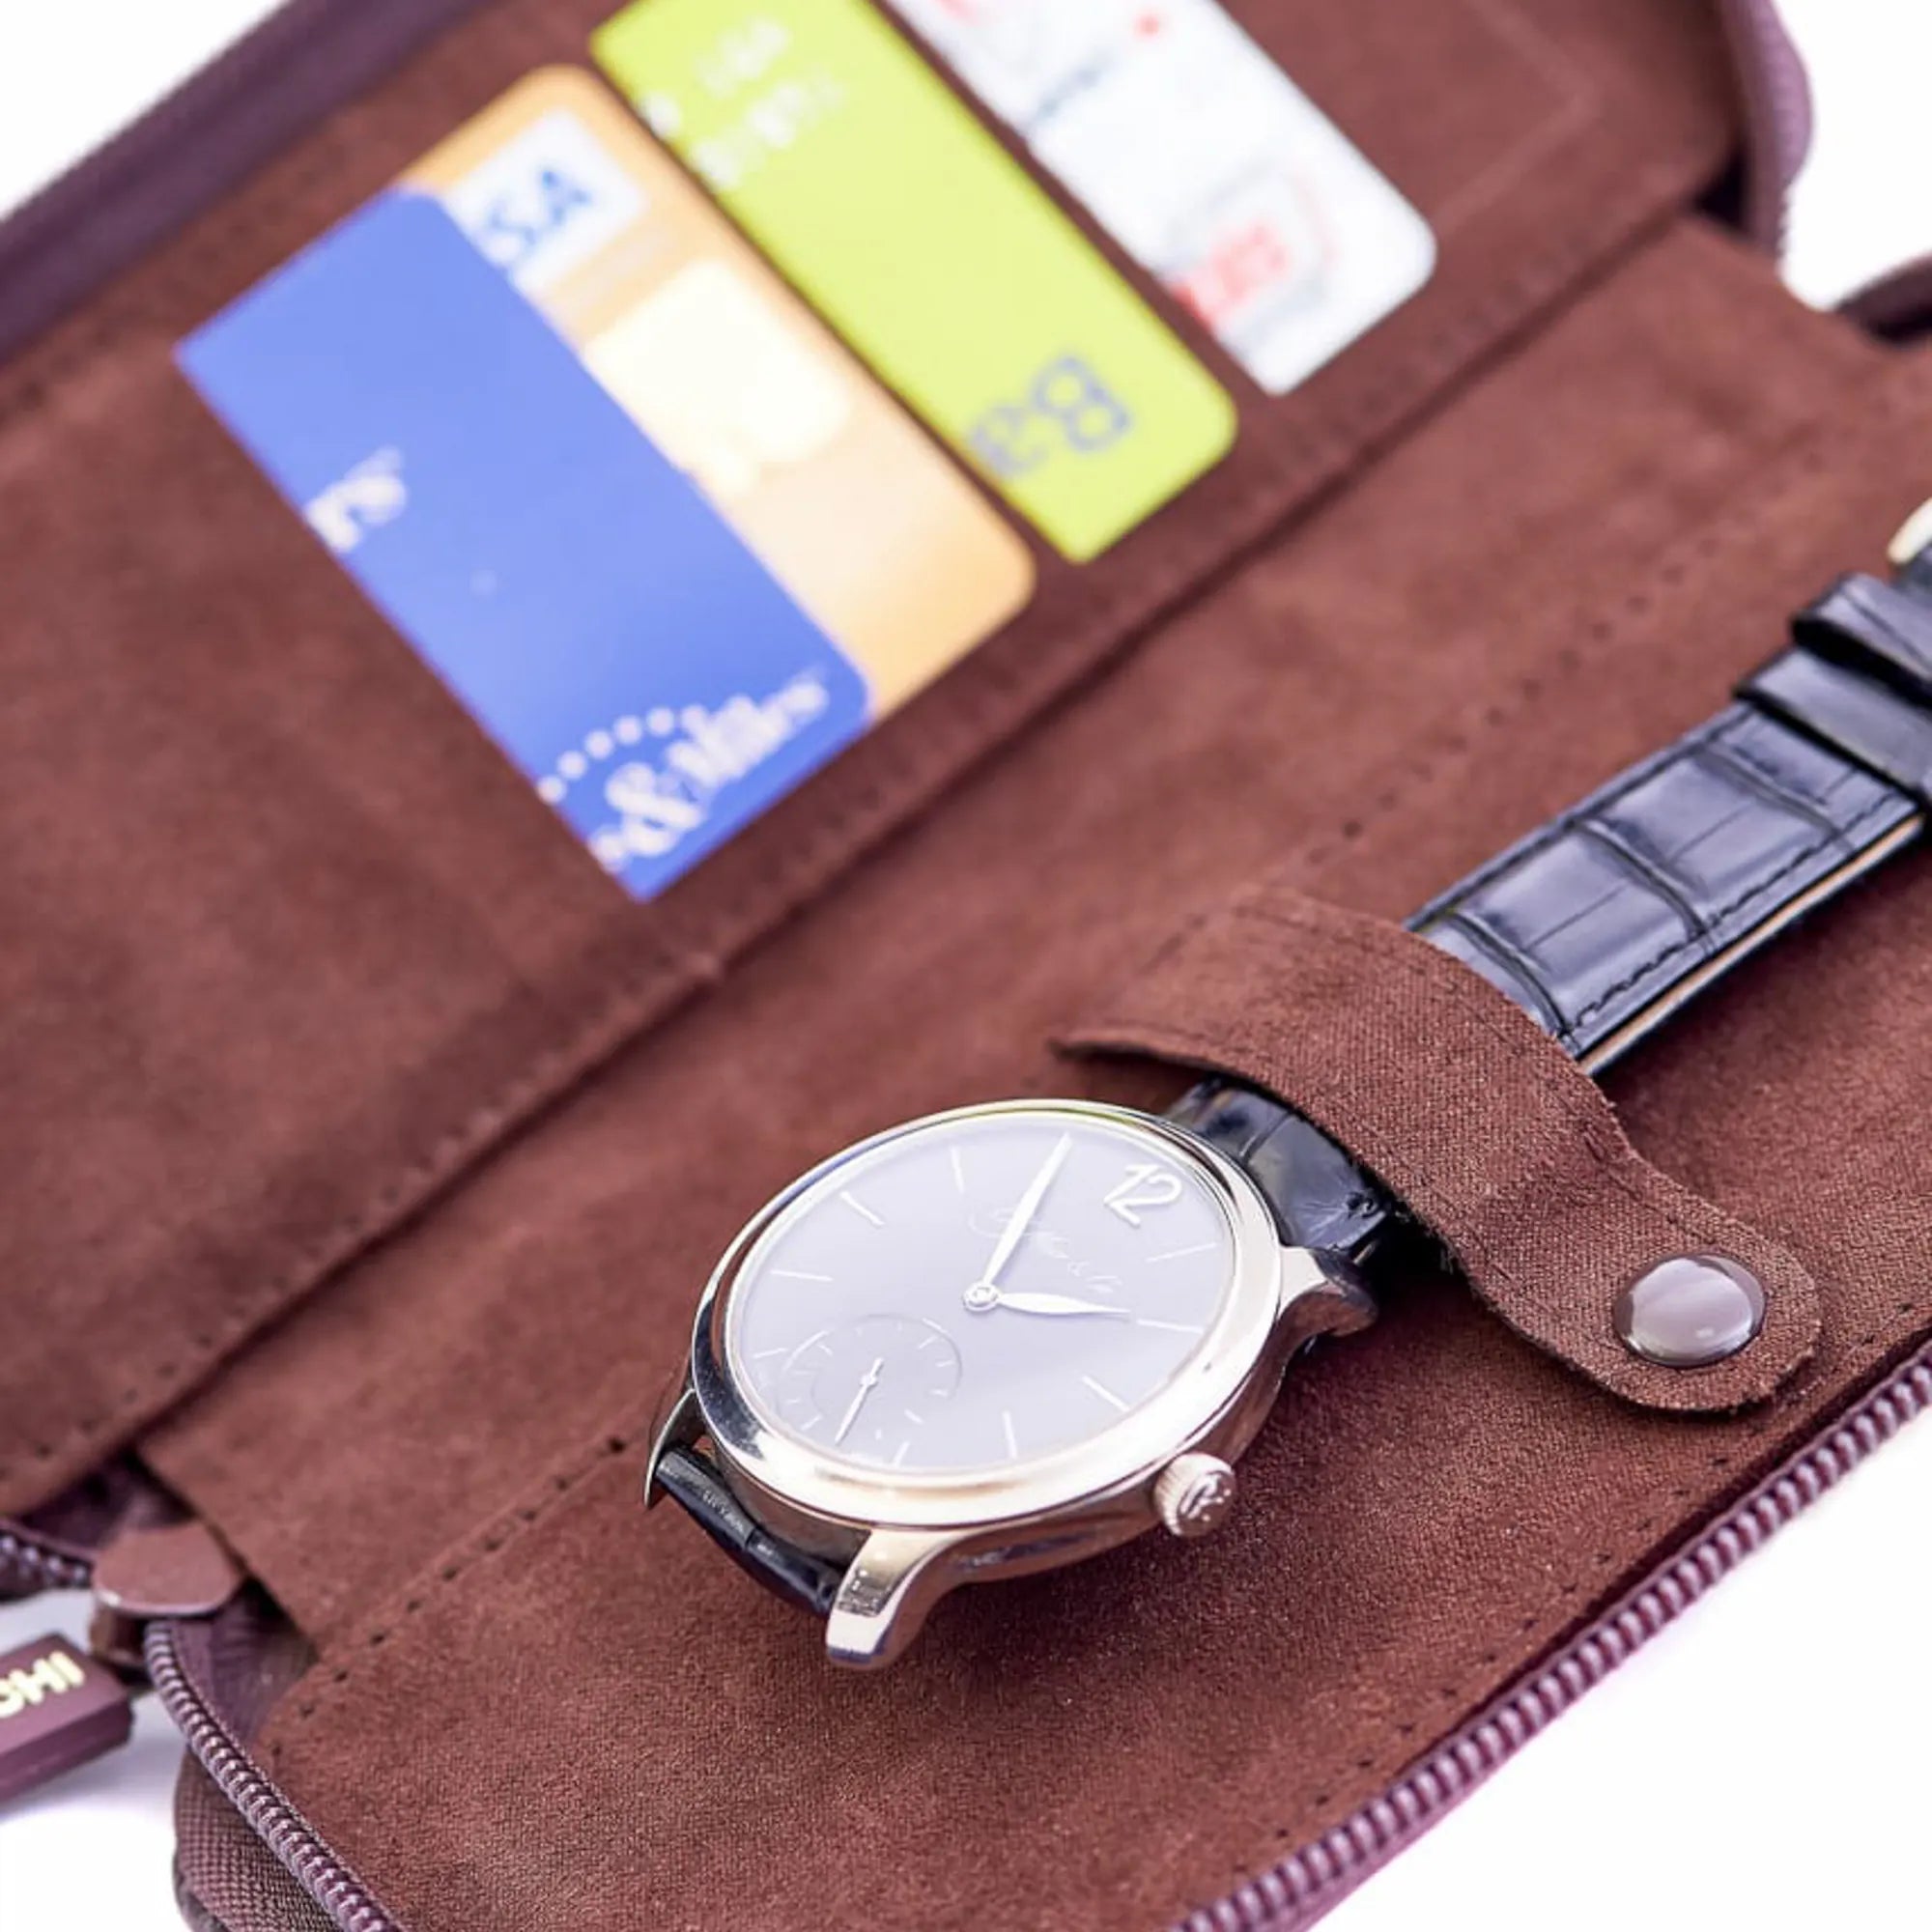 Etuis für Schreibgeräte oder Uhren in schokobraunem Leder von Leanschi gefüllt mit Karten und einer Uhr von Moser & Cie